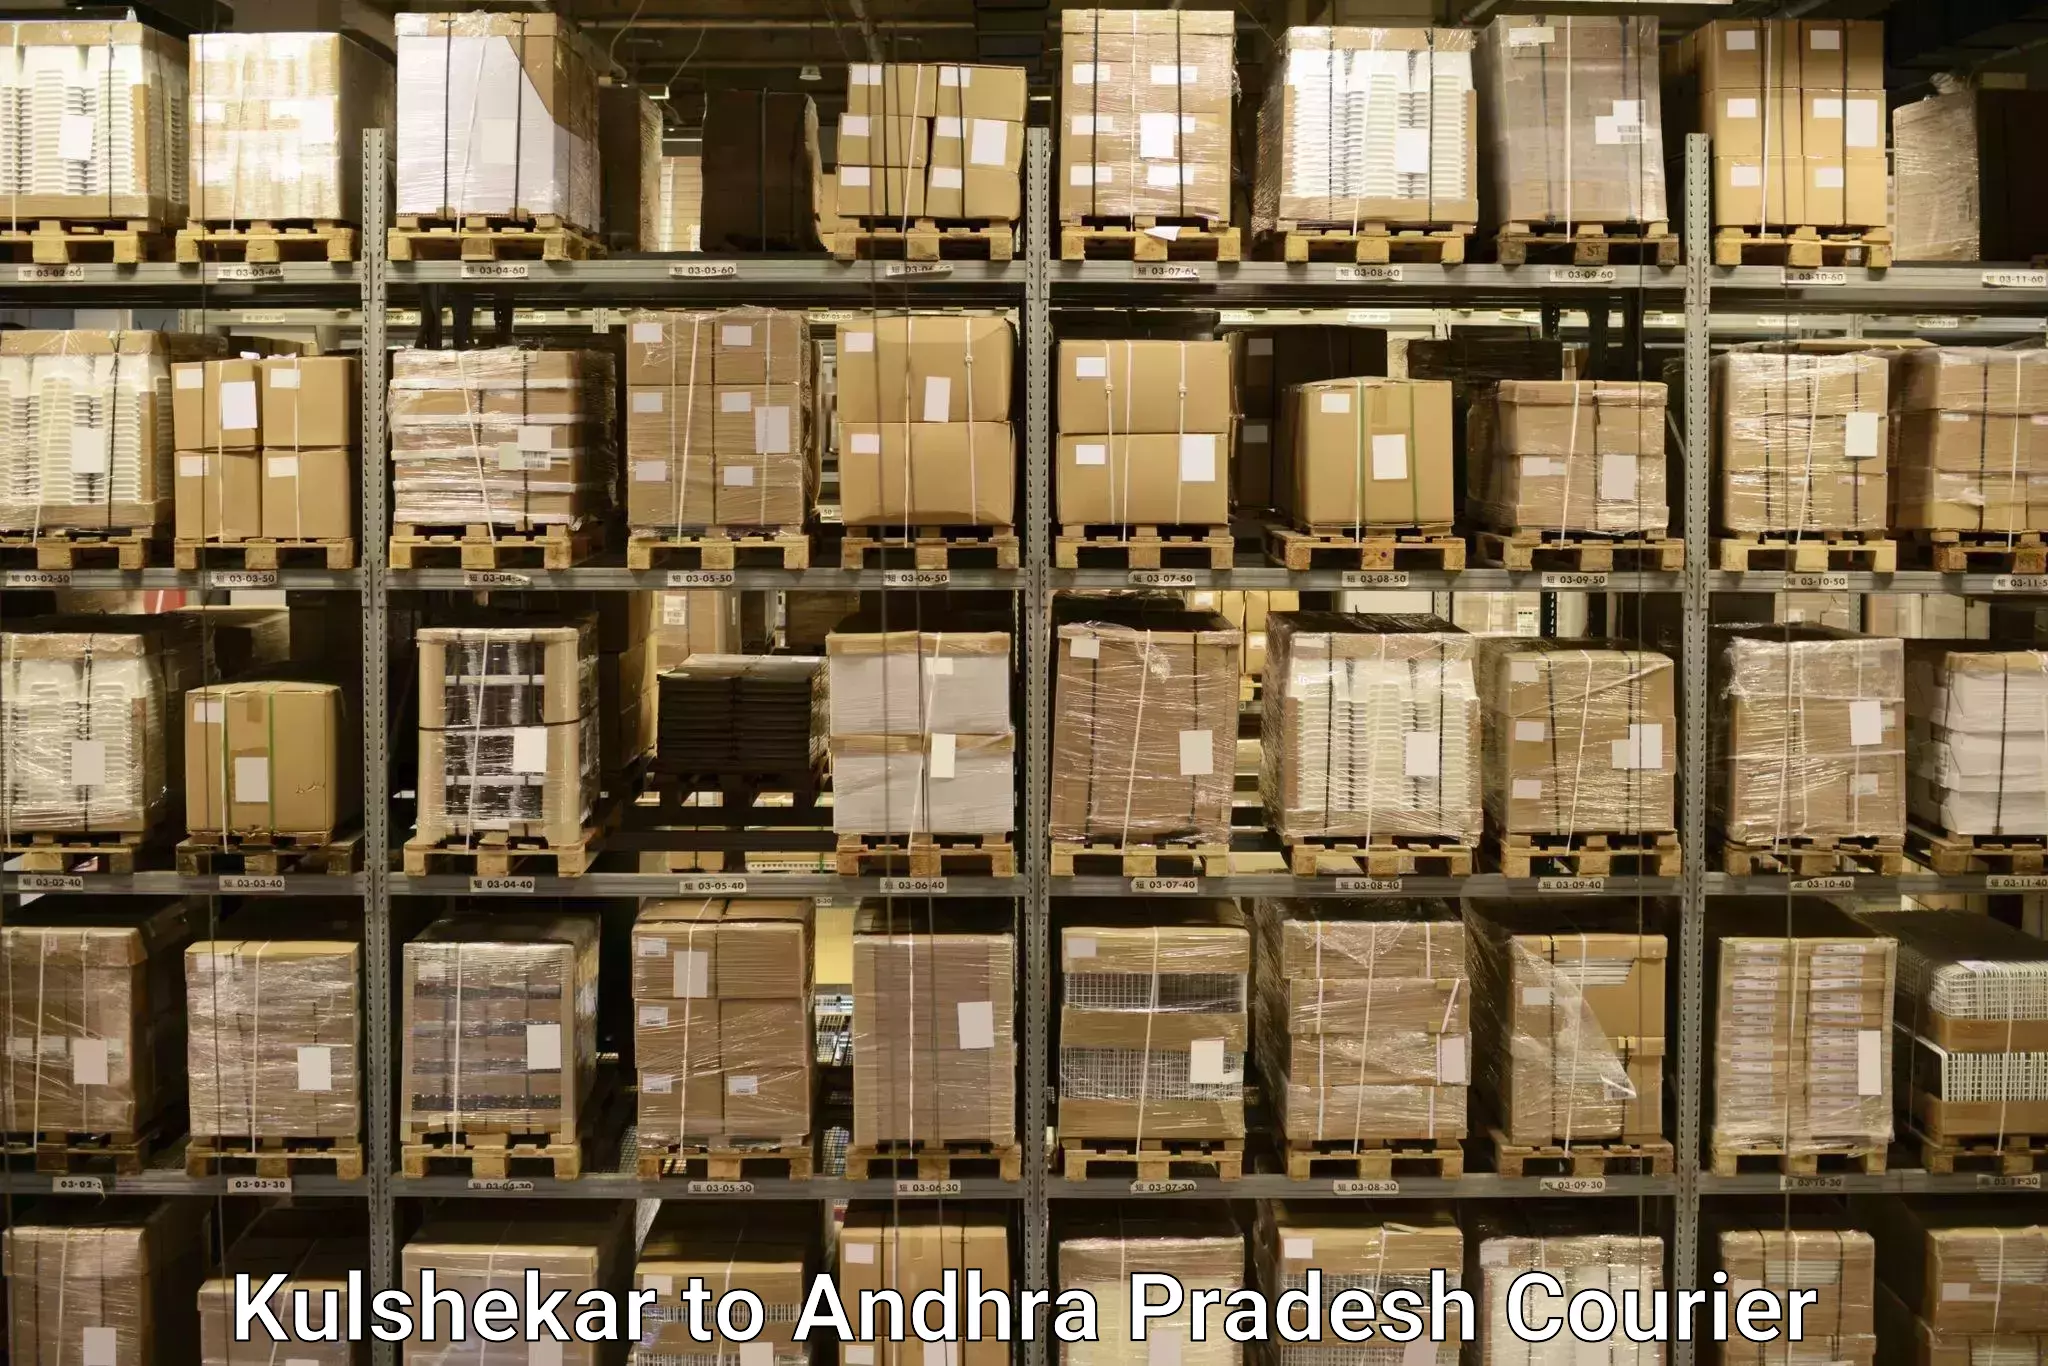 Luggage delivery app Kulshekar to Gajapathinagaram